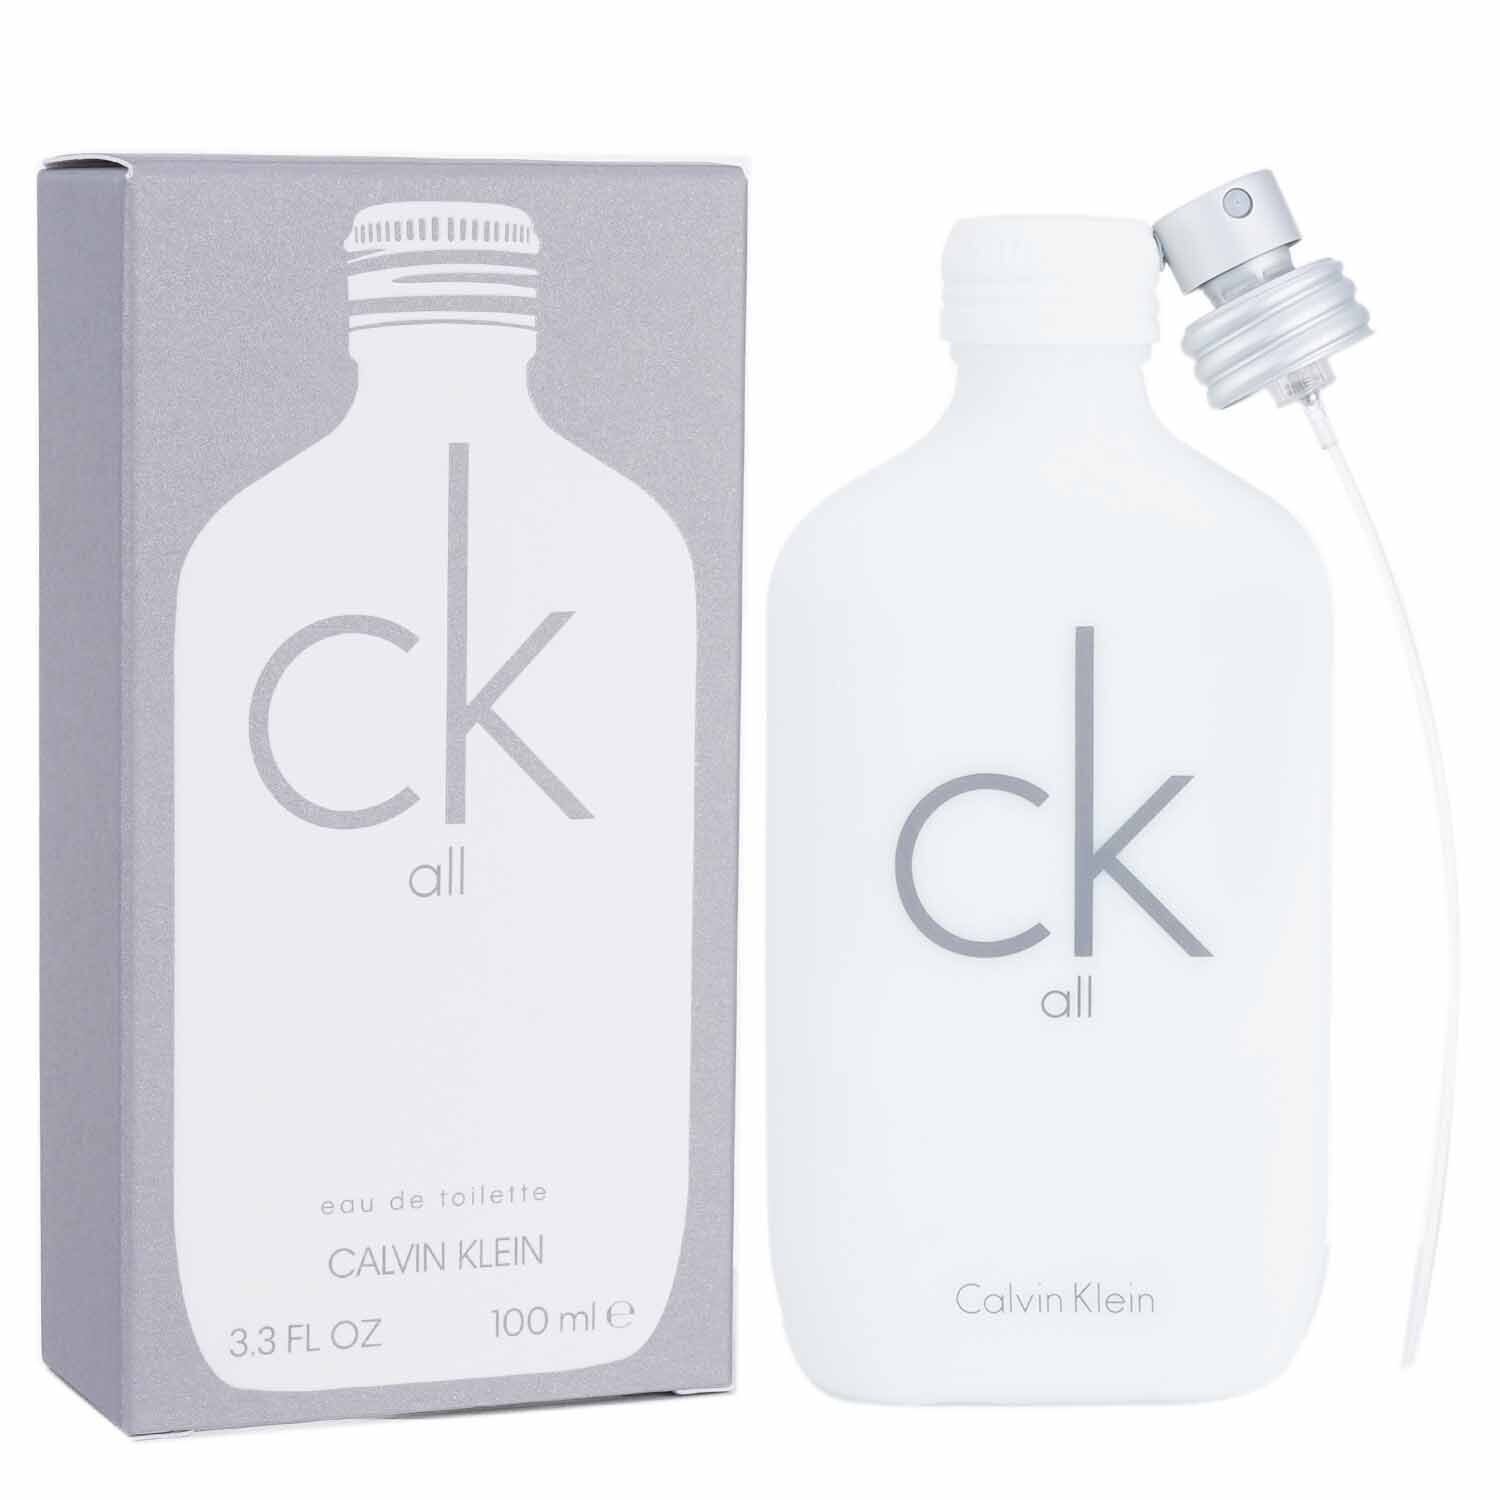 Calvin Klein CK All Eau De Toilette Spray 100ml/3.4oz